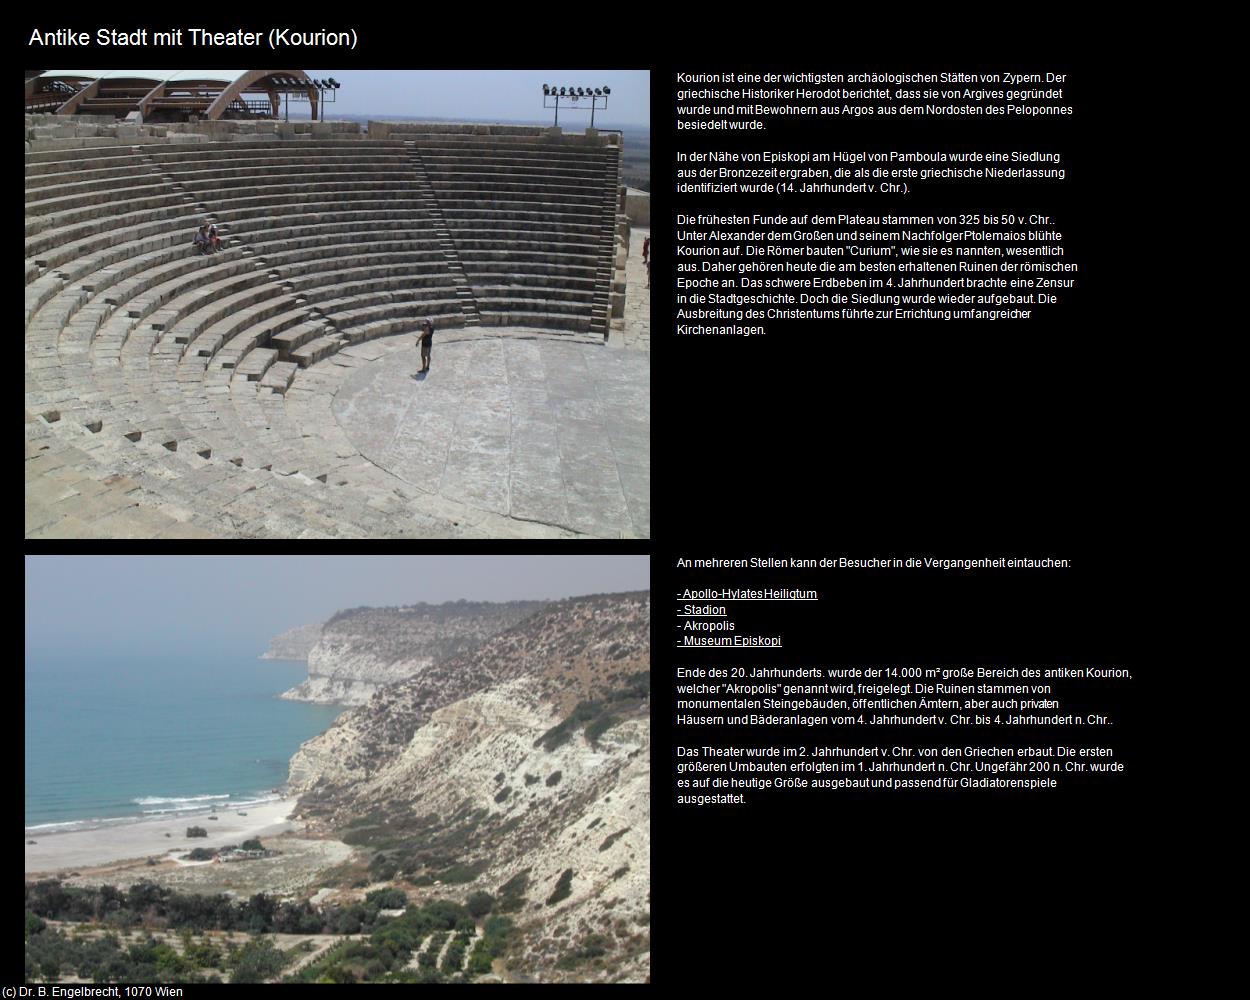 Antike Stadt mit Theater (Kourion) in ZYPERN-Insel der Aphrodite(c)B.Engelbrecht